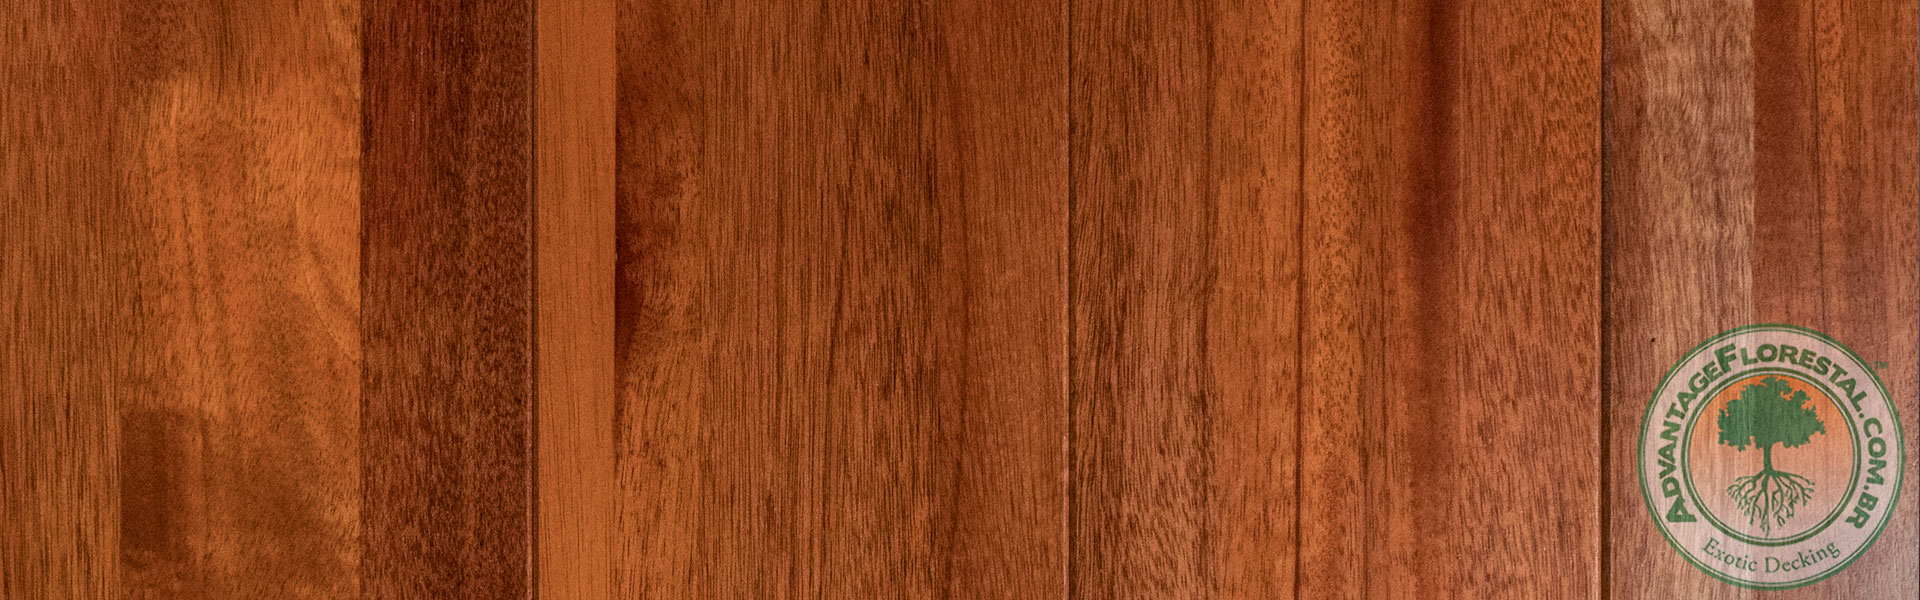 Staybull American Walnut eco-friendly hardwood flooring